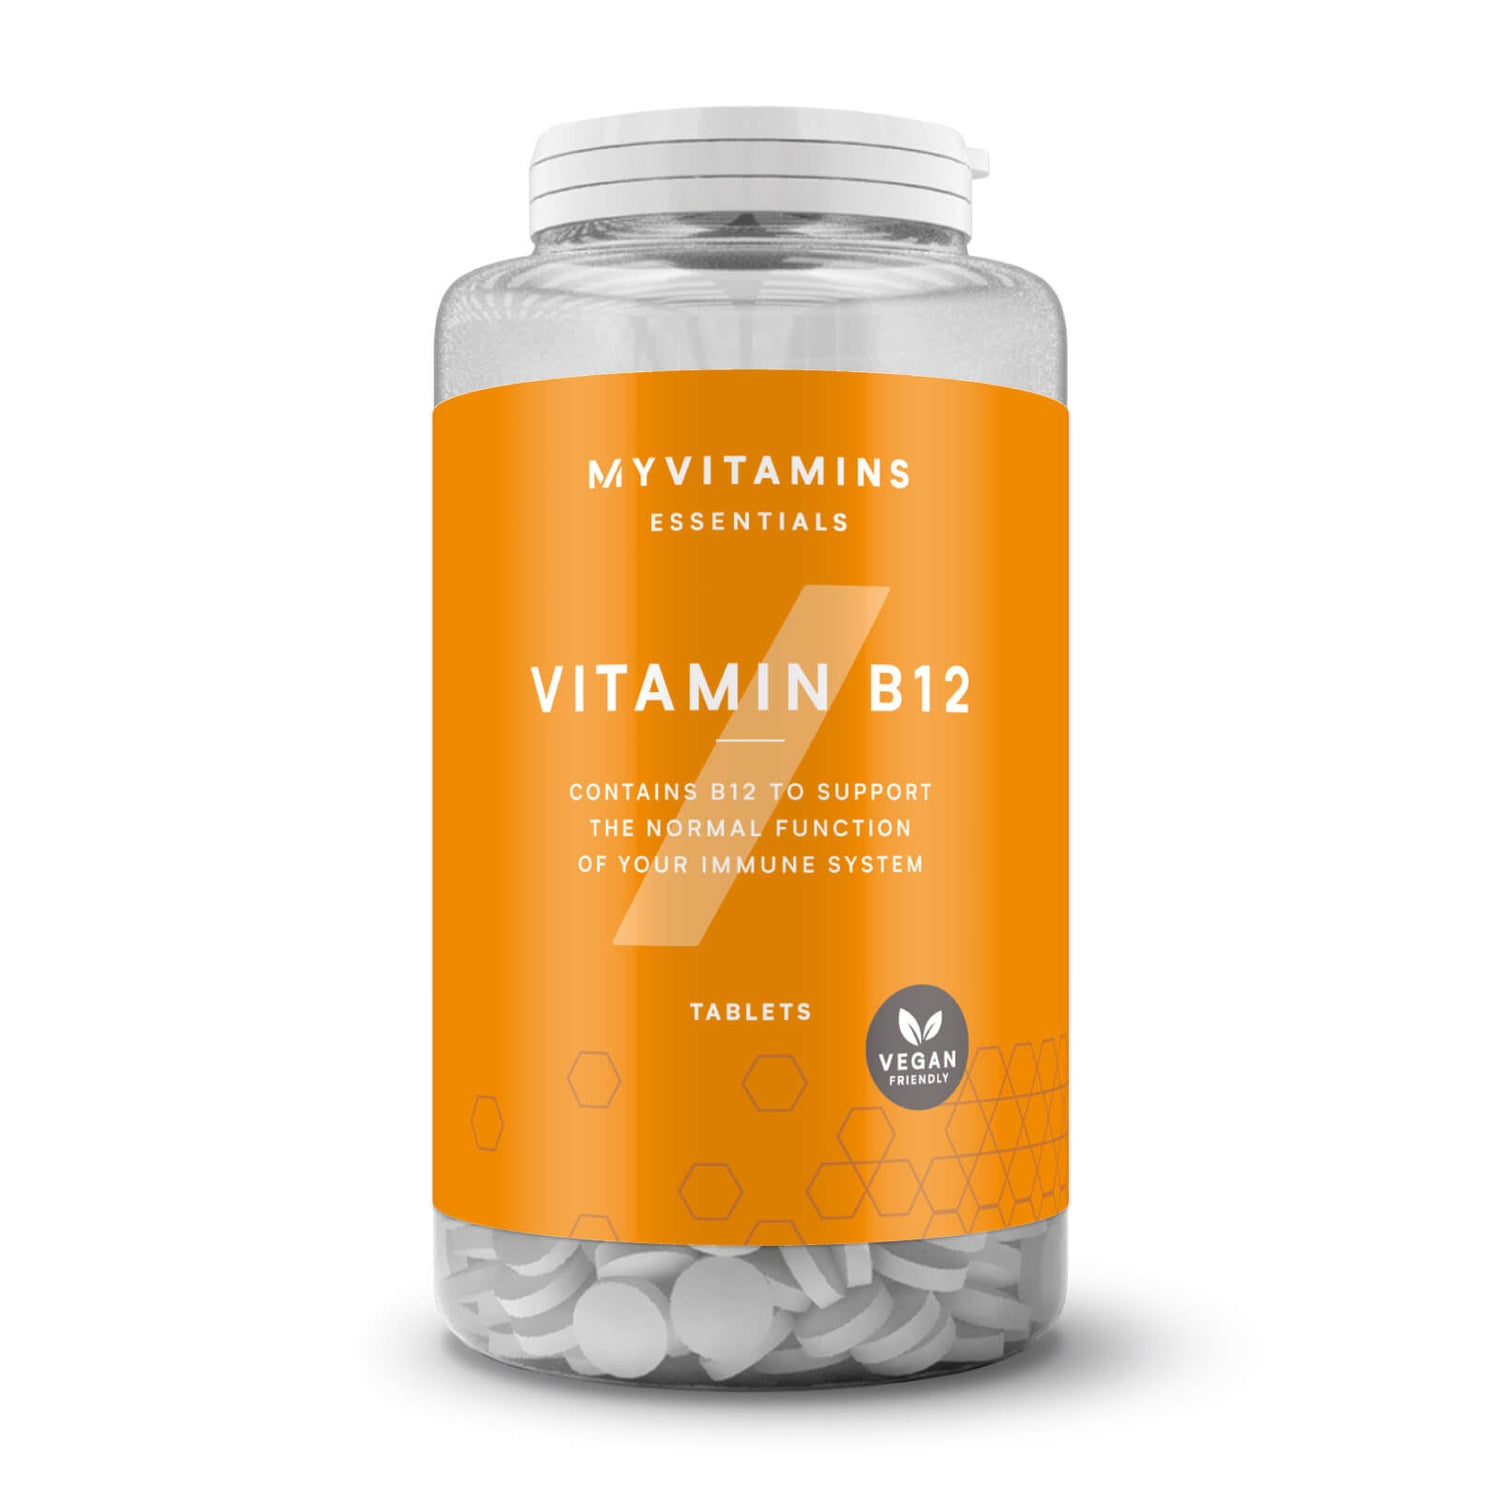 Myvitamins Vitamin B12 Tablets (CEE) - 60tablete